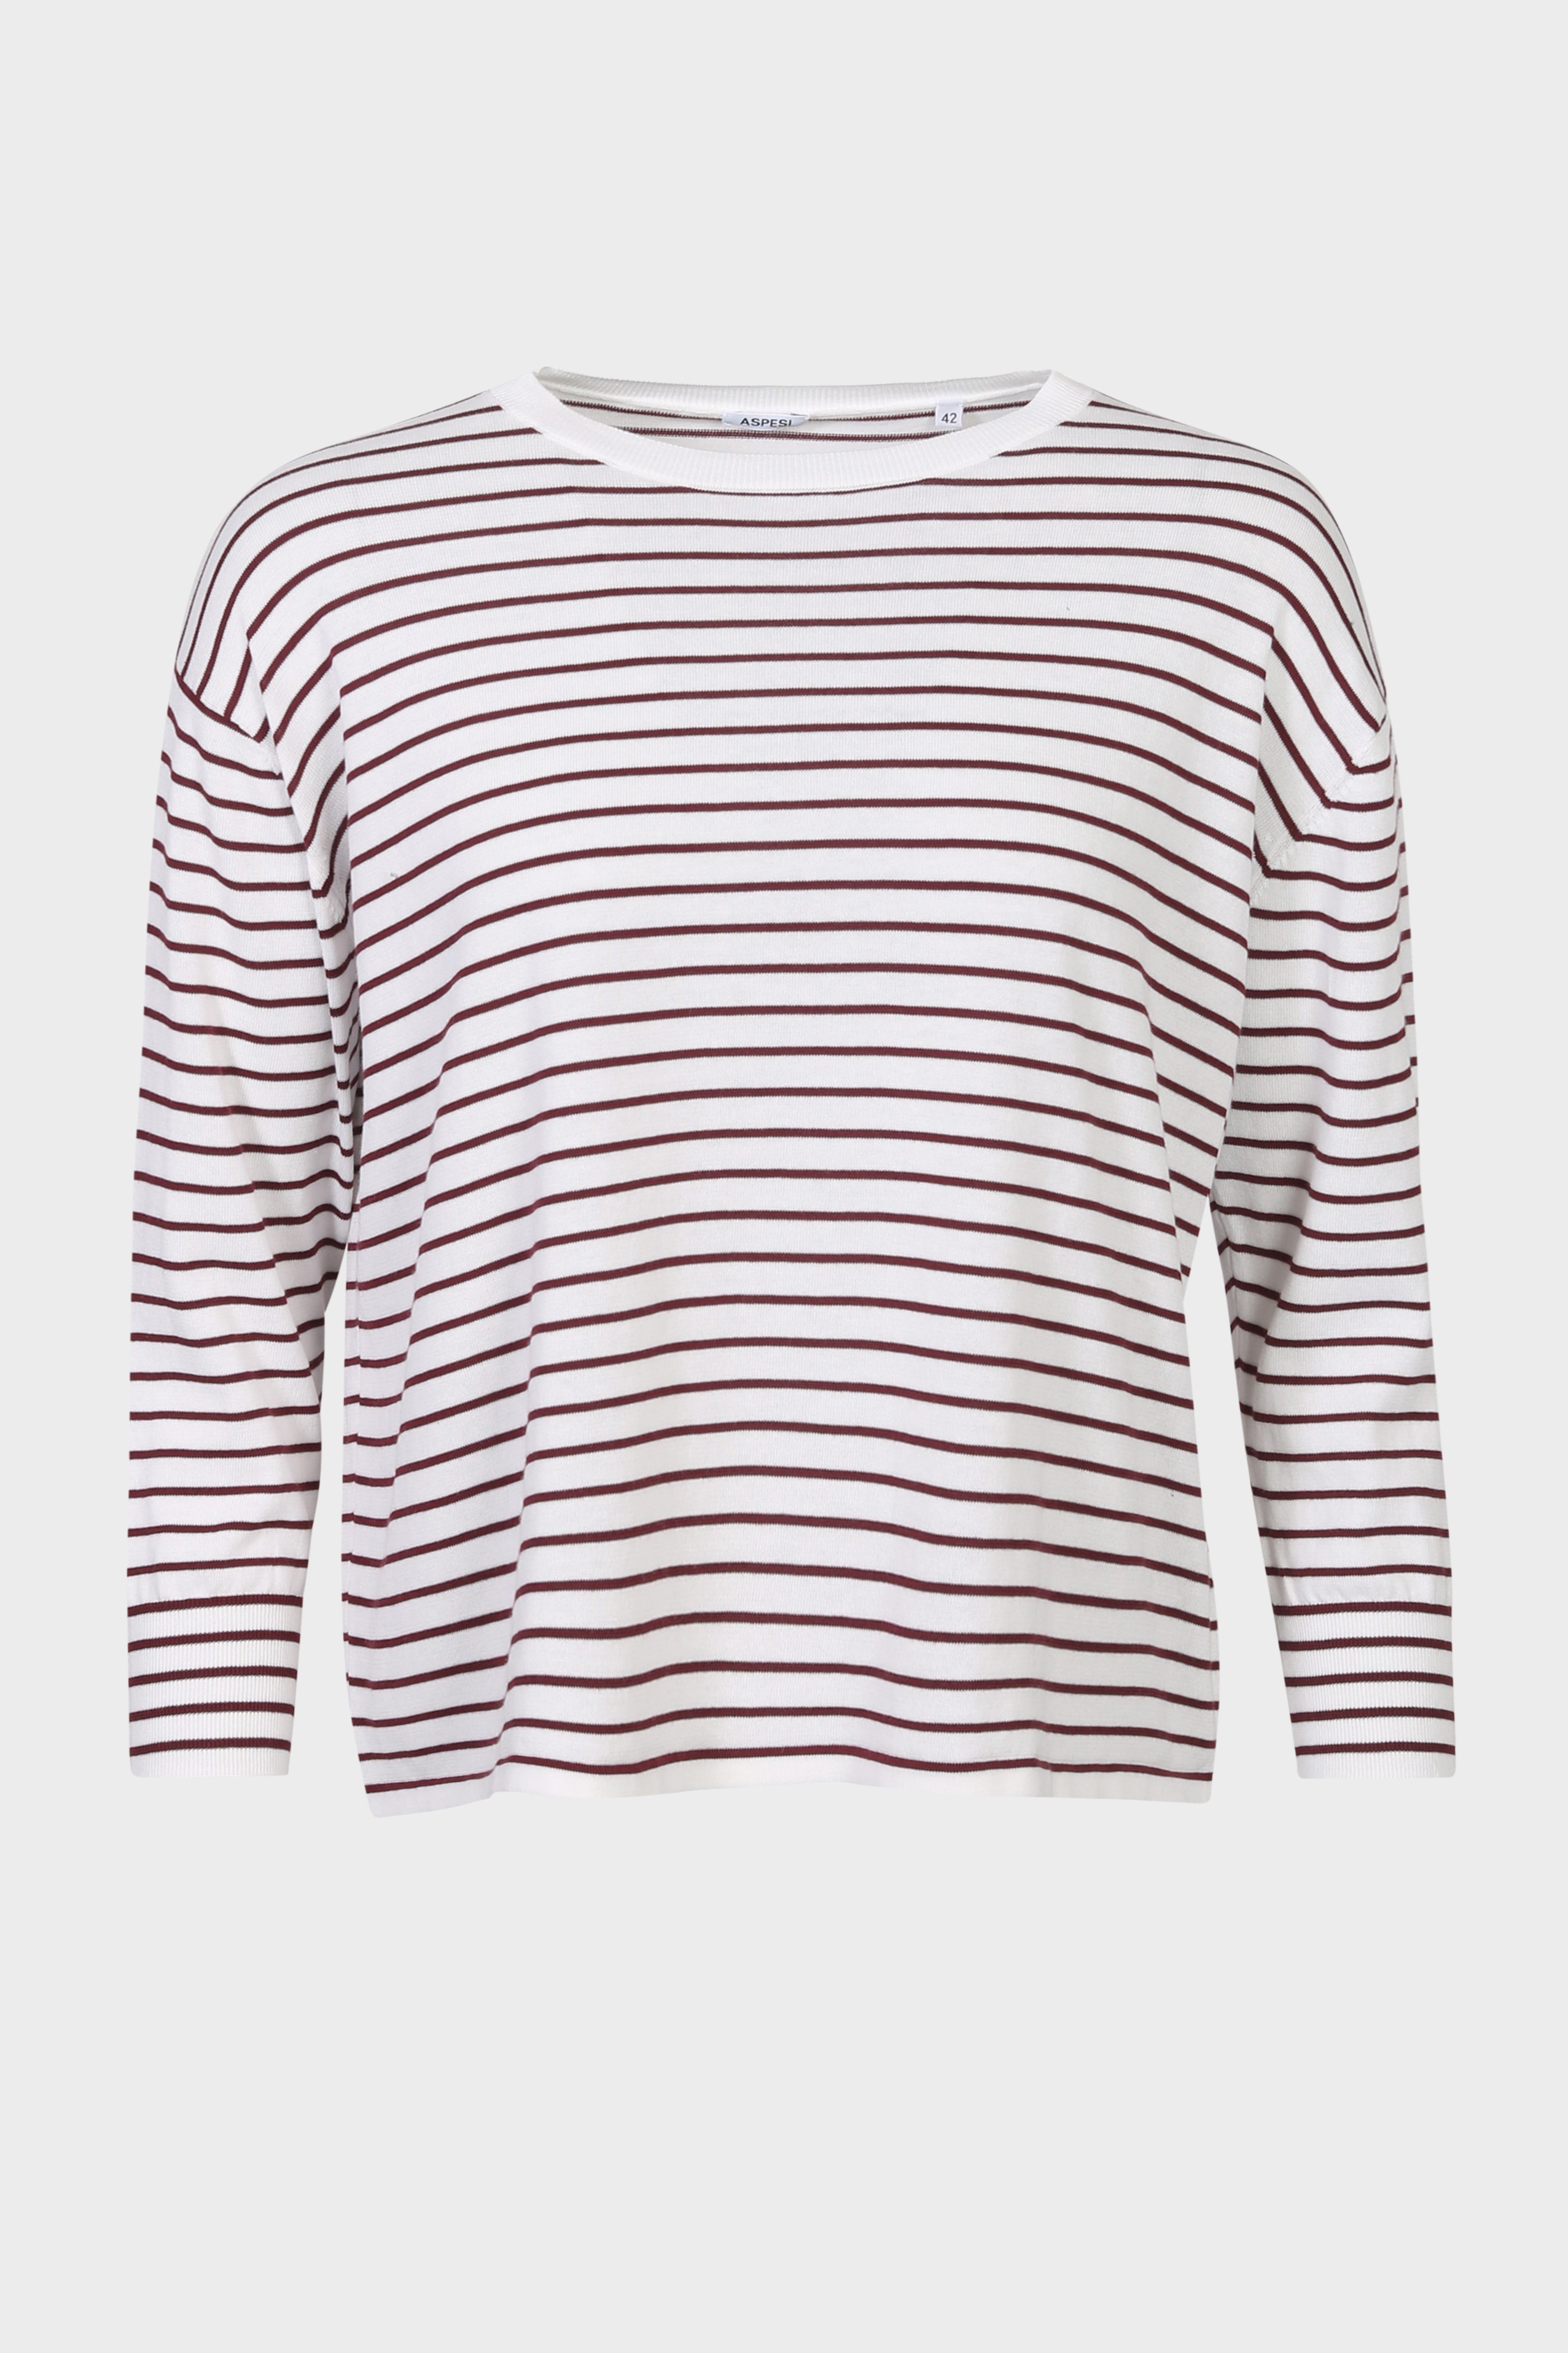 ASPESI Striped Cotton Sweater White/Bordeaux